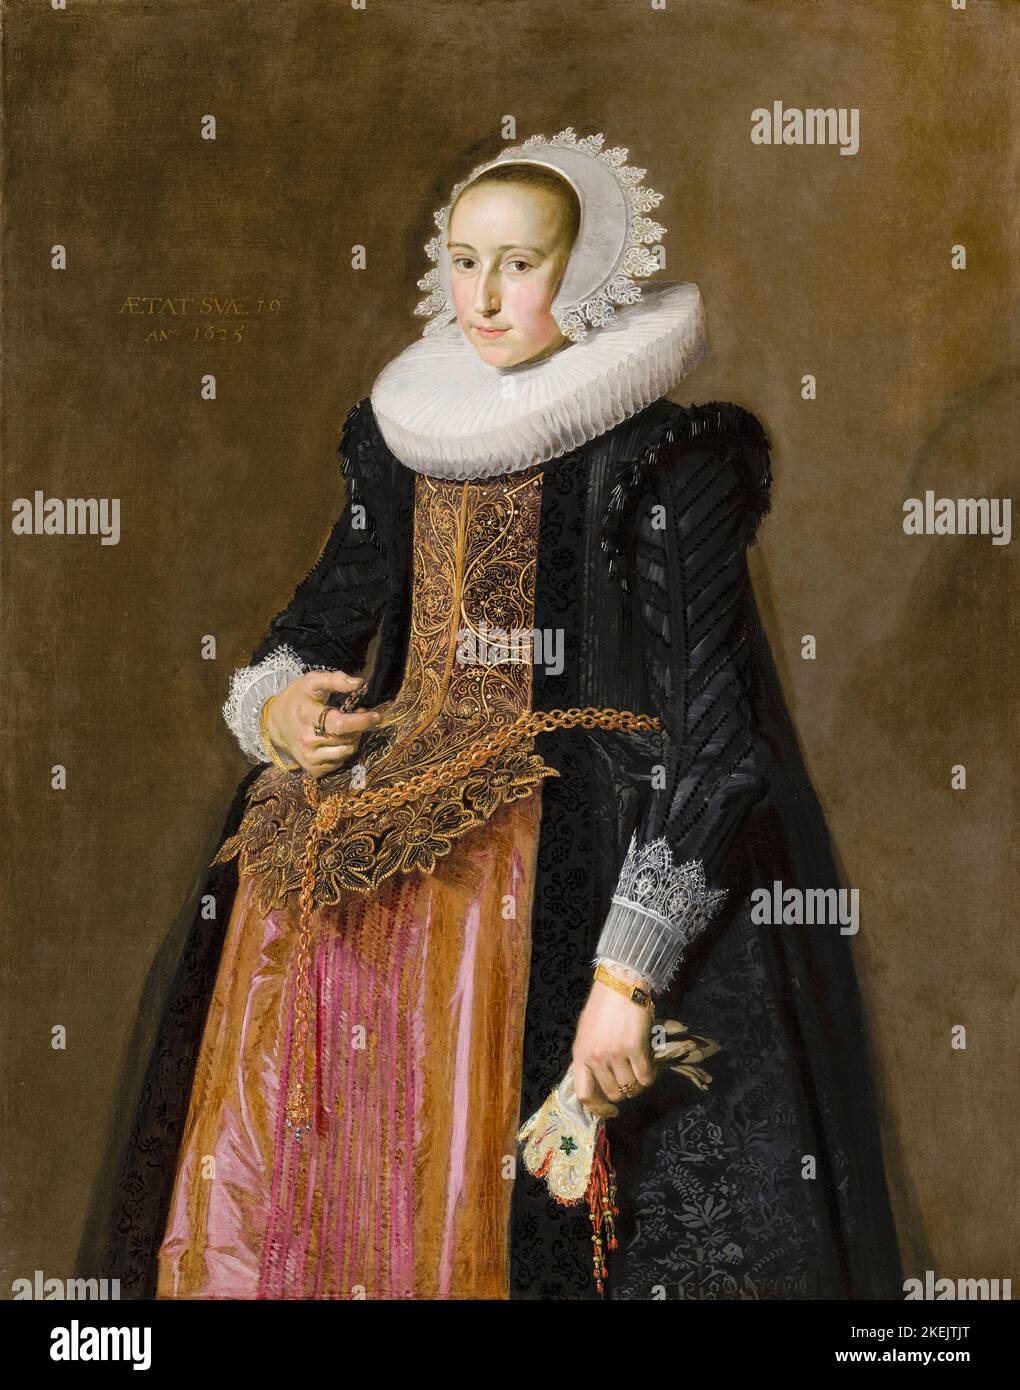 Aletta Hanemans (1606-1653), était brasseur de l'Hoeffijser à Haarlem, portrait peint dans l'huile sur toile par Frans Hals, vers 1625 Banque D'Images